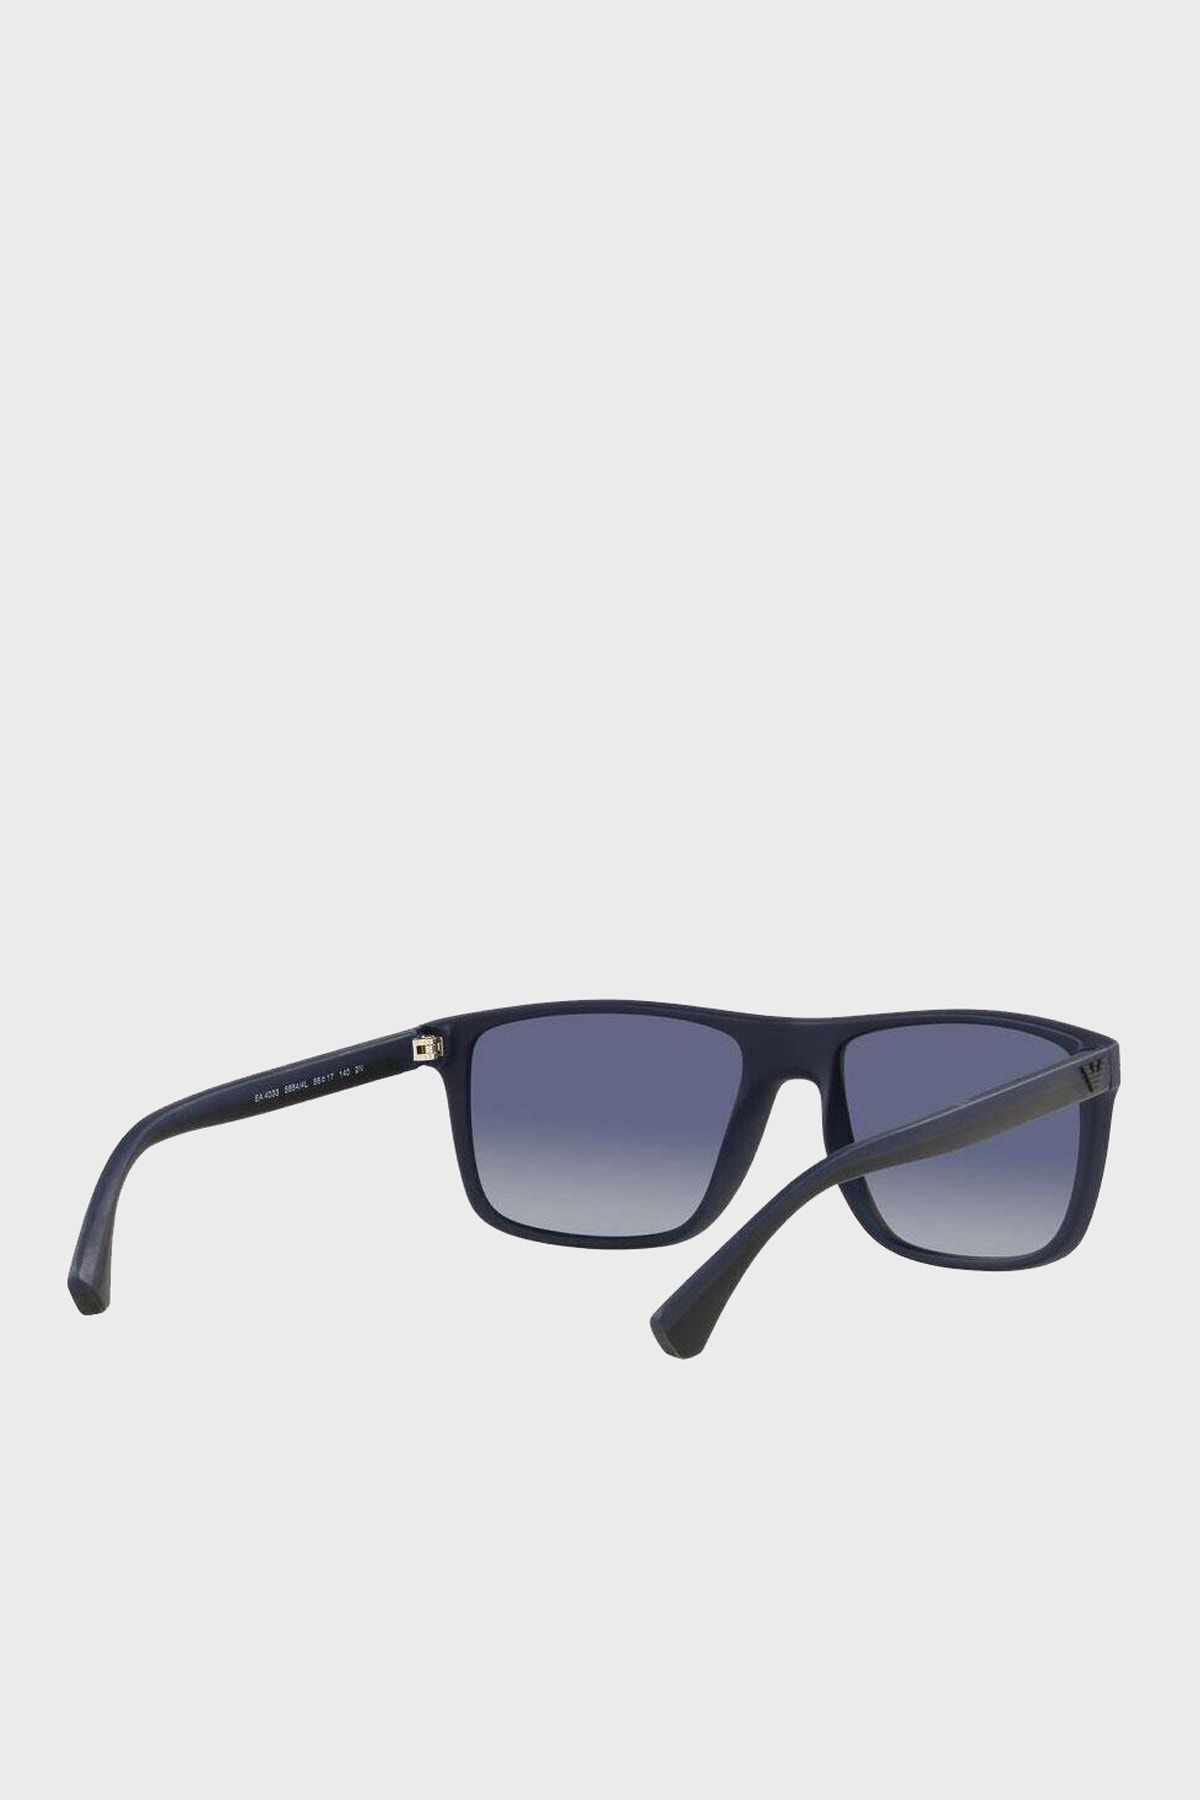 Emporio Armani sunglasses EA-4033 58644L